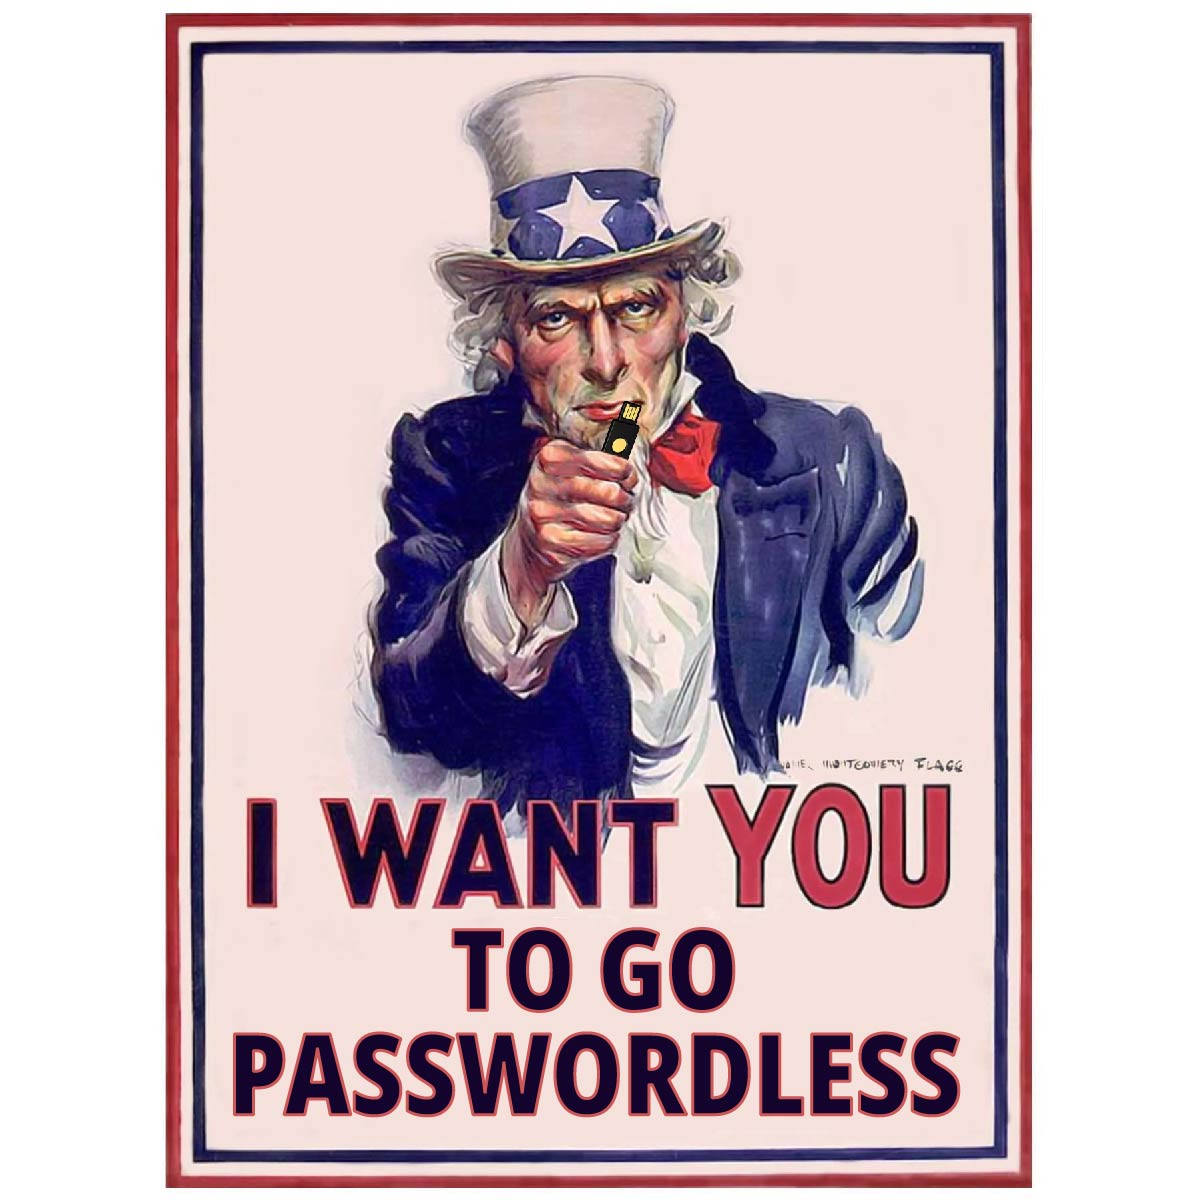 El gobierno de EE. UU. quiere que utilice MFA resistente al phishing y que no tenga contraseña. Meme del Tío Sam